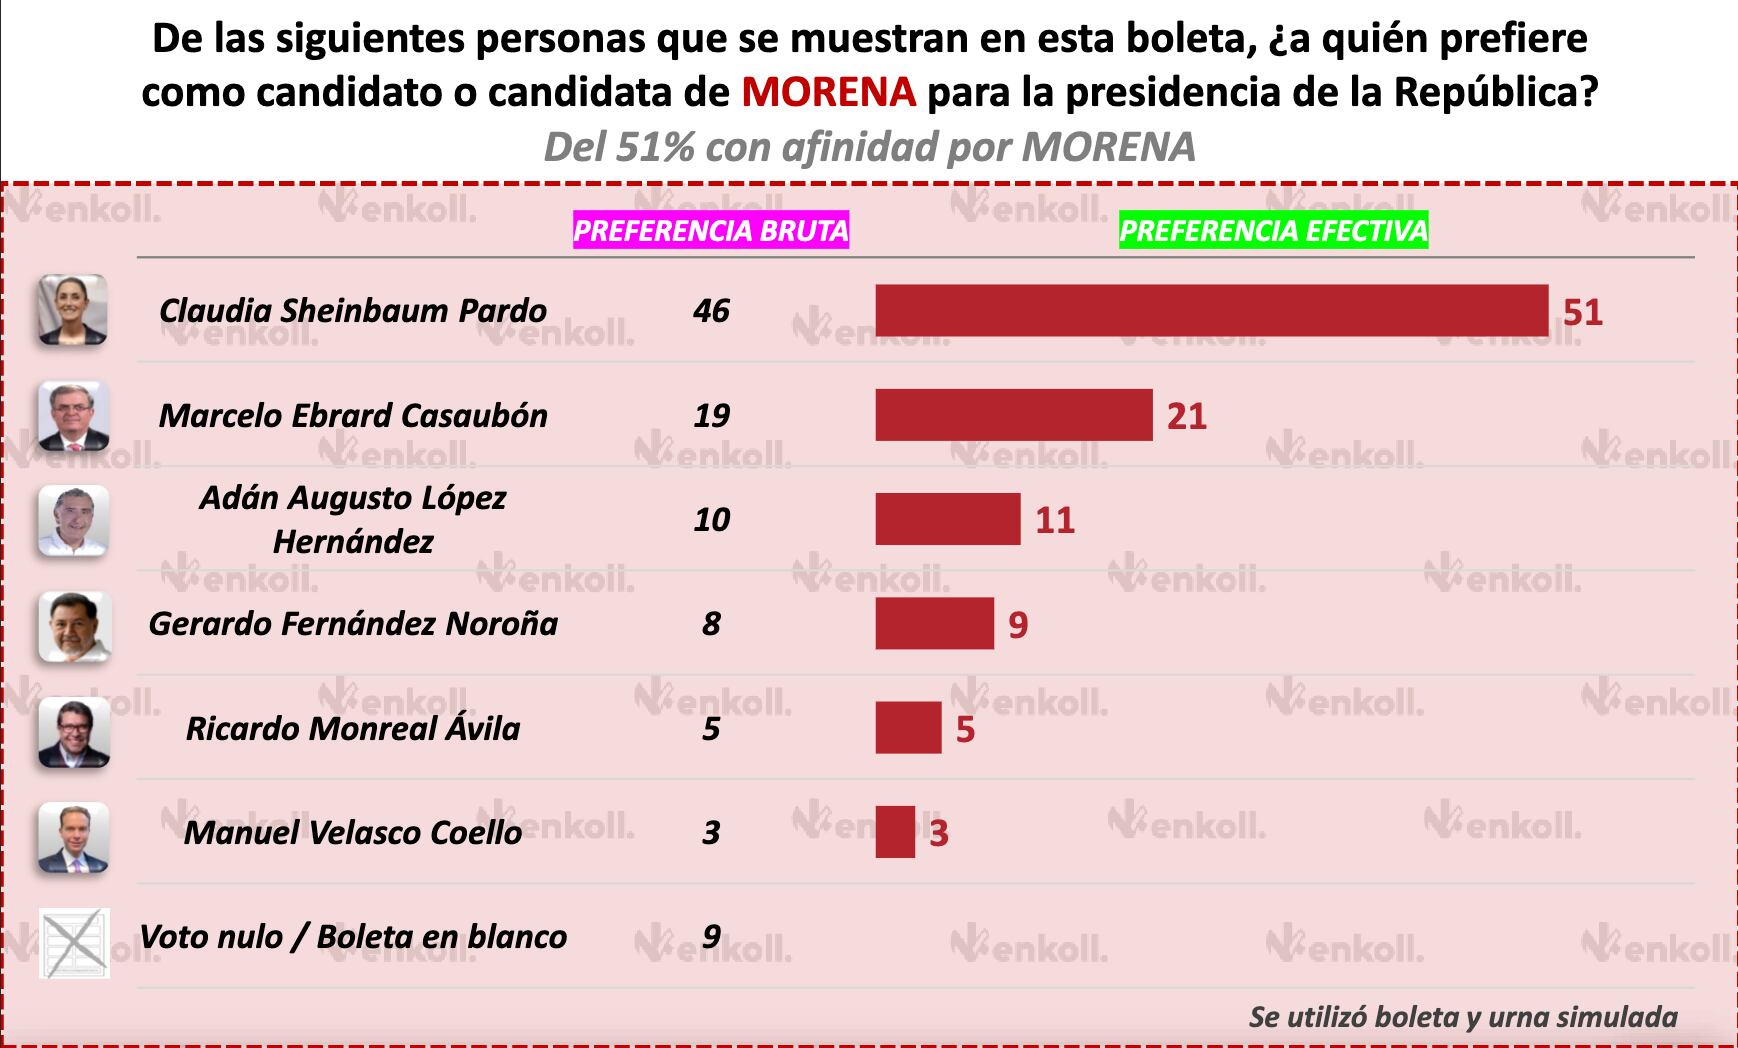 Preferencia de voto entre los encuestados que simpatizan con Morena.